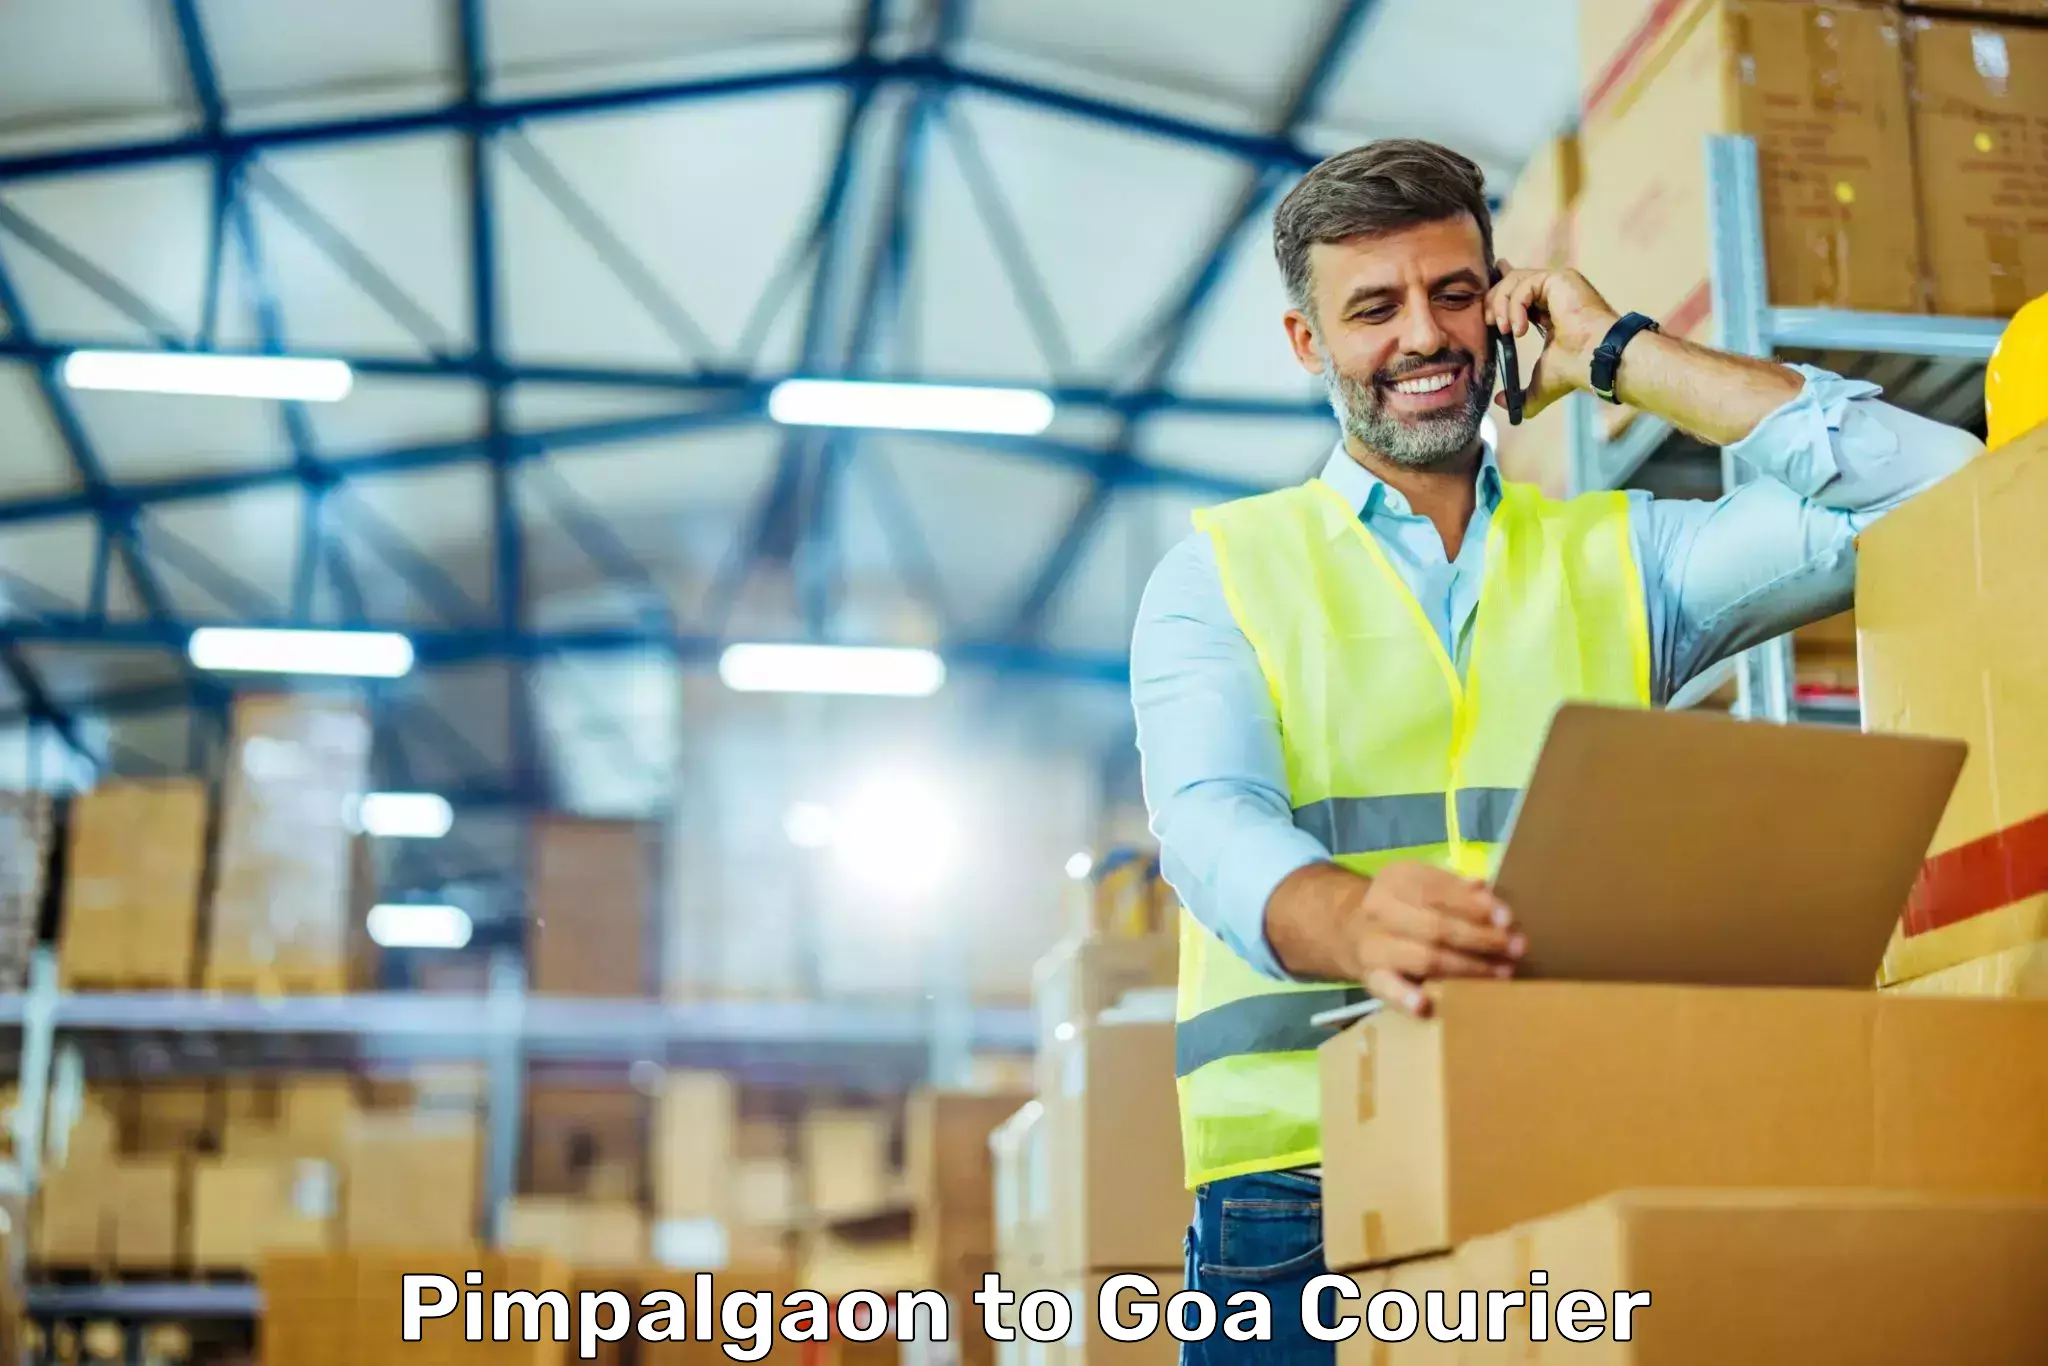 Courier service comparison Pimpalgaon to Panaji